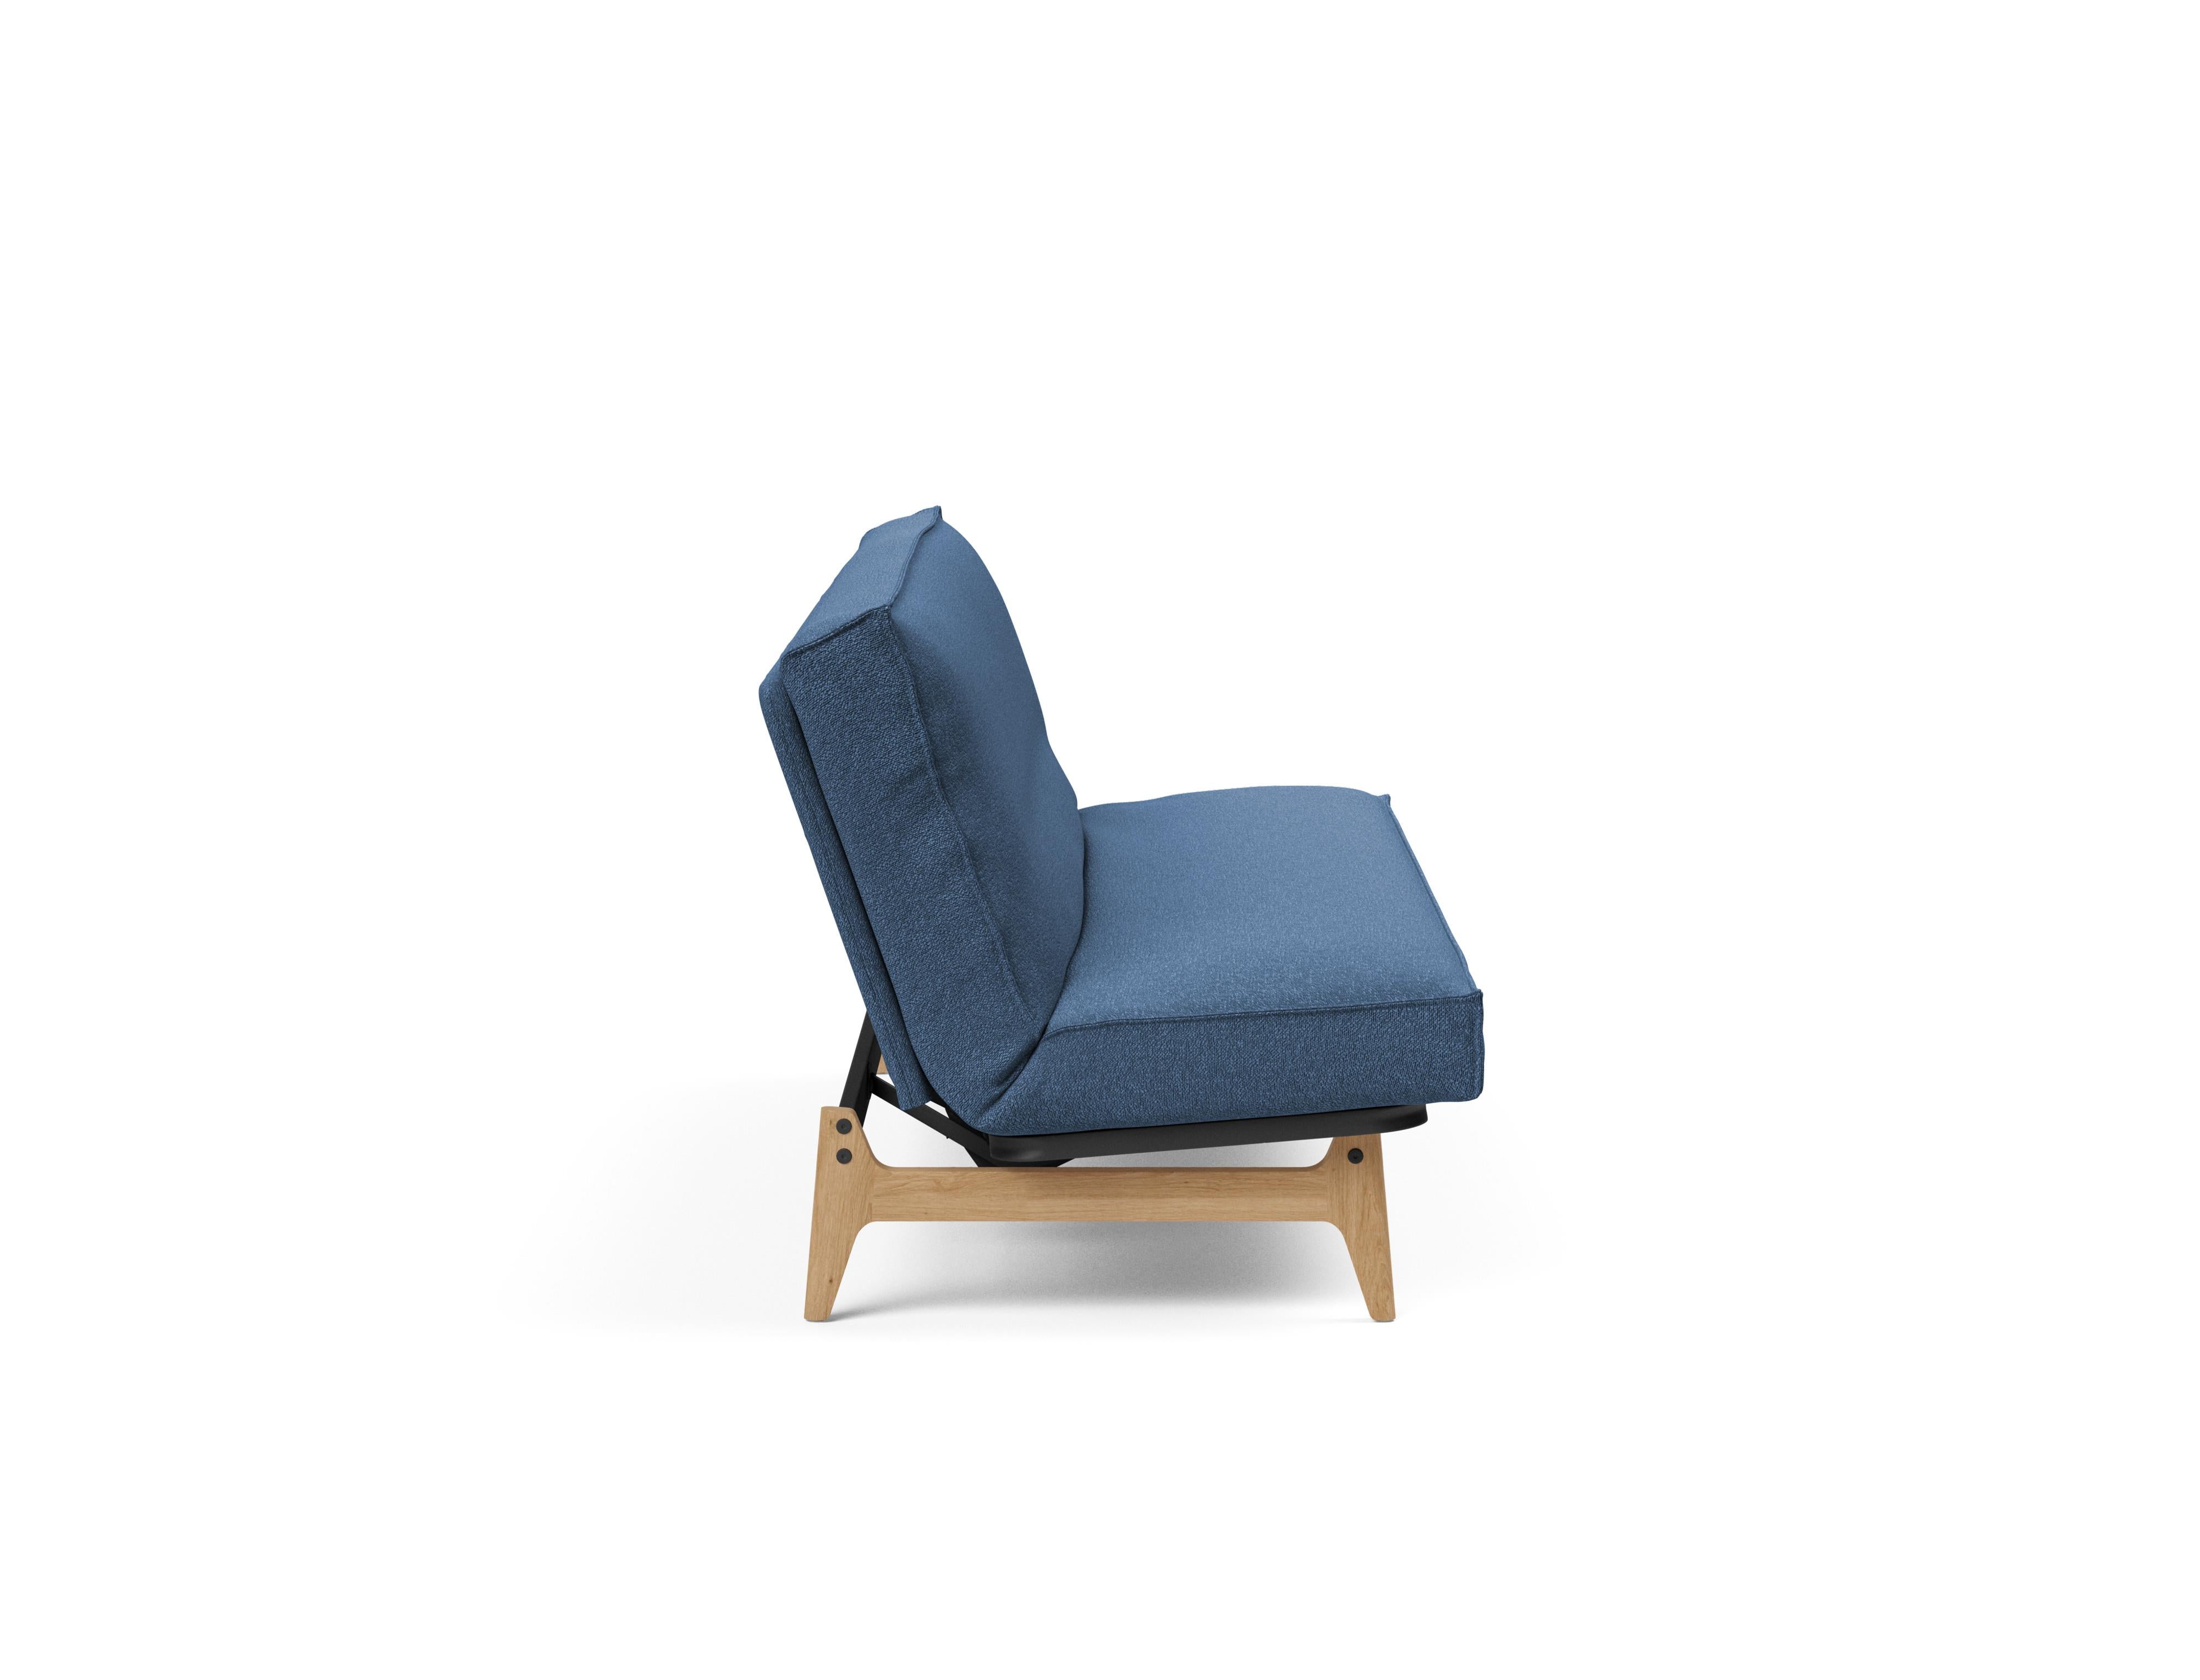 Aslak 120 Bettsofa Sharp Plus Cover in Blau 537 präsentiert im Onlineshop von KAQTU Design AG. Bettsofa ist von Innovation Living